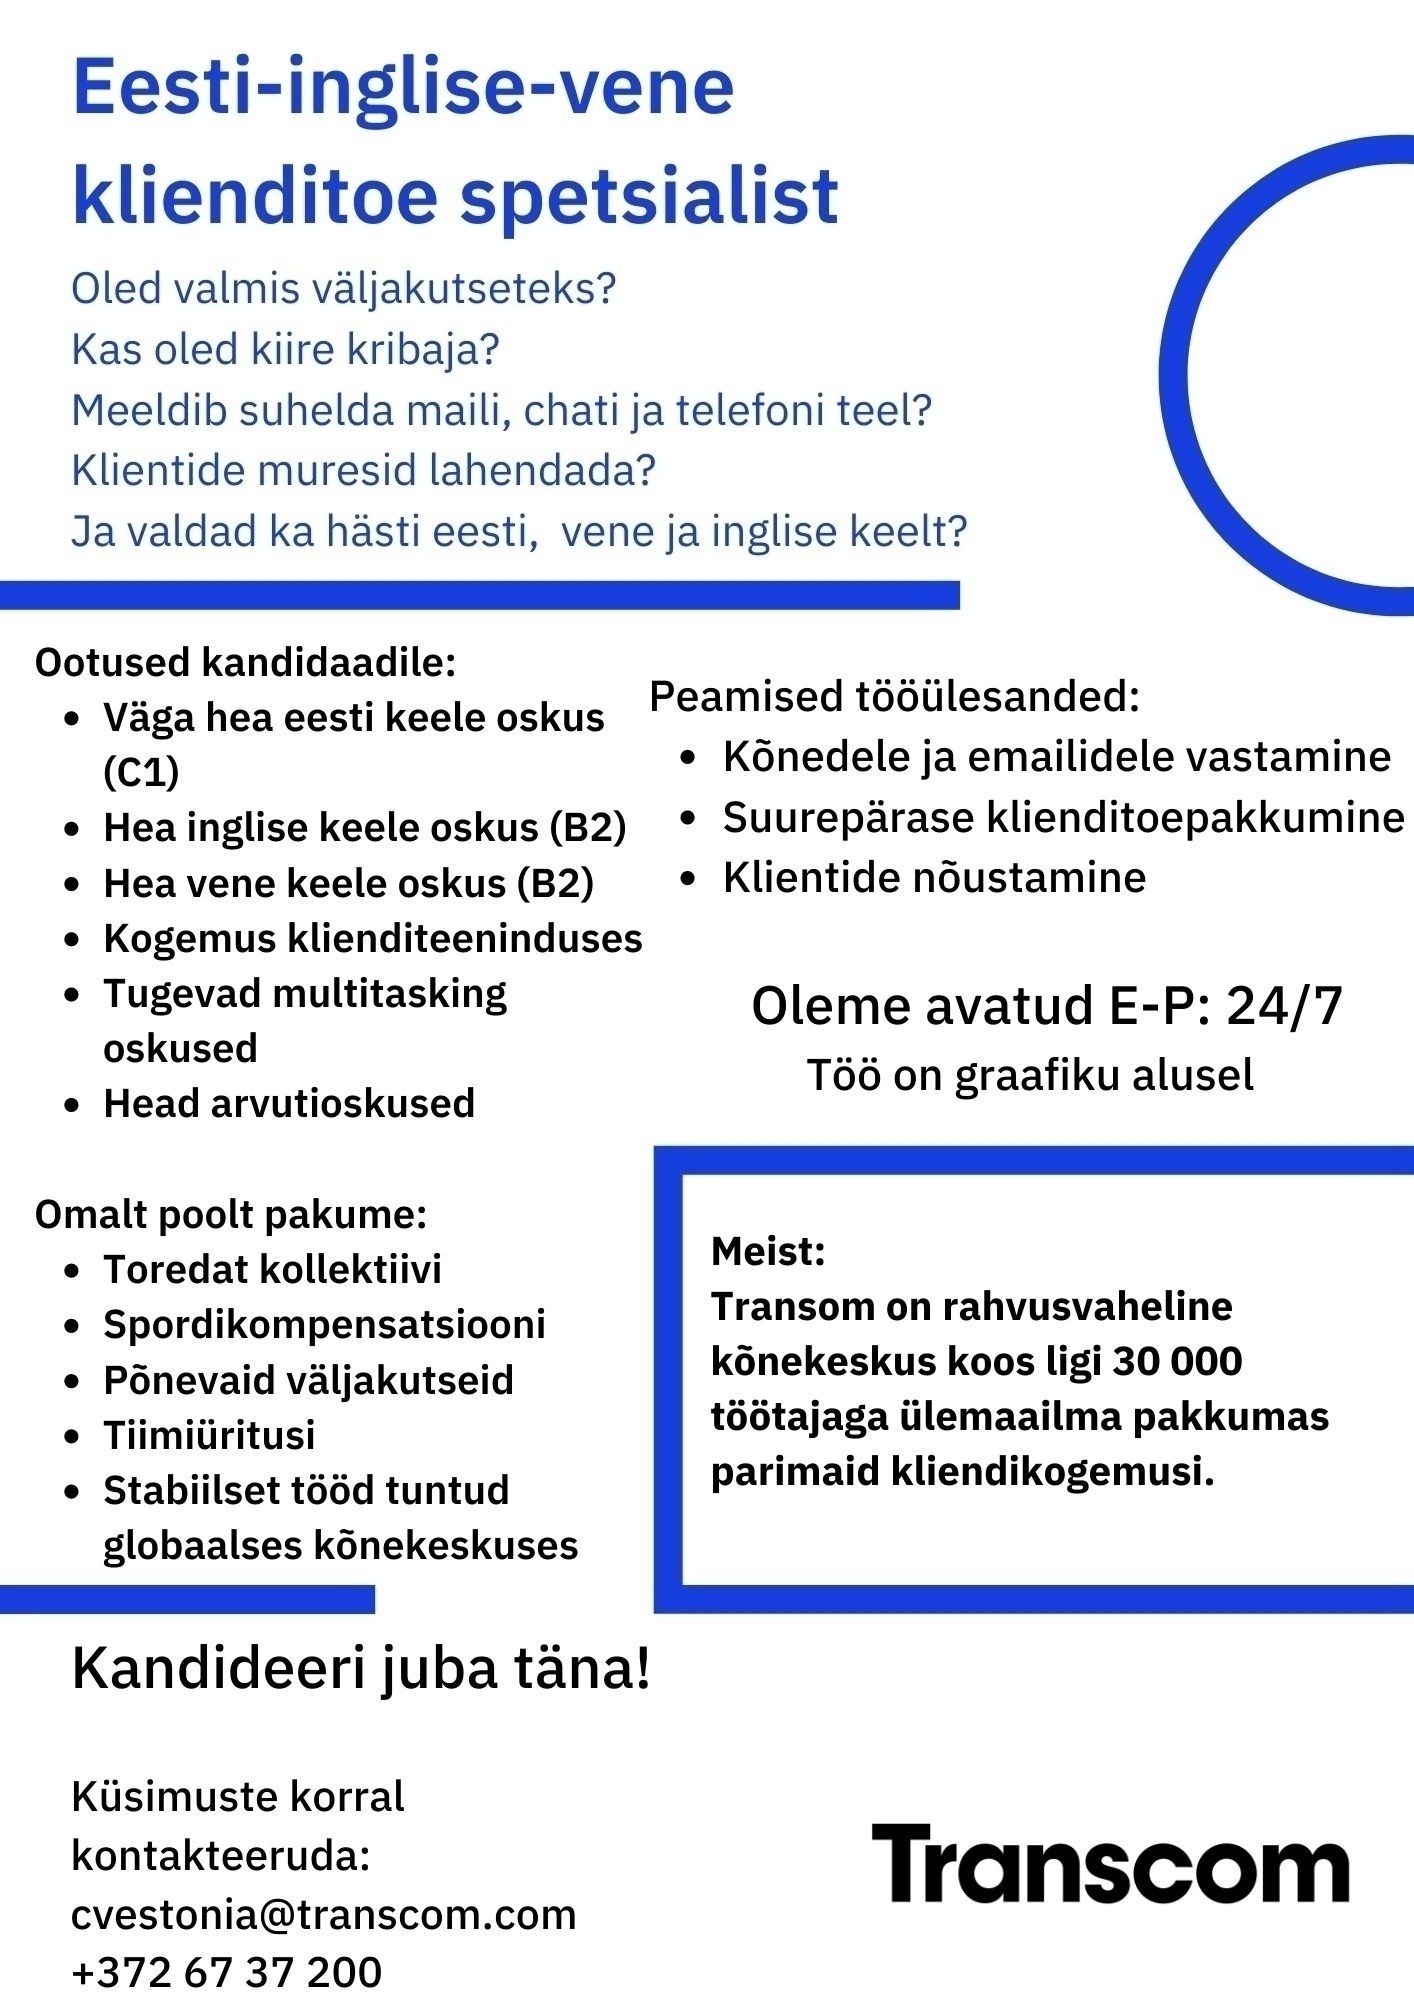 Transcom Eesti OÜ Eesti-inglise-vene klienditoe spetsialist